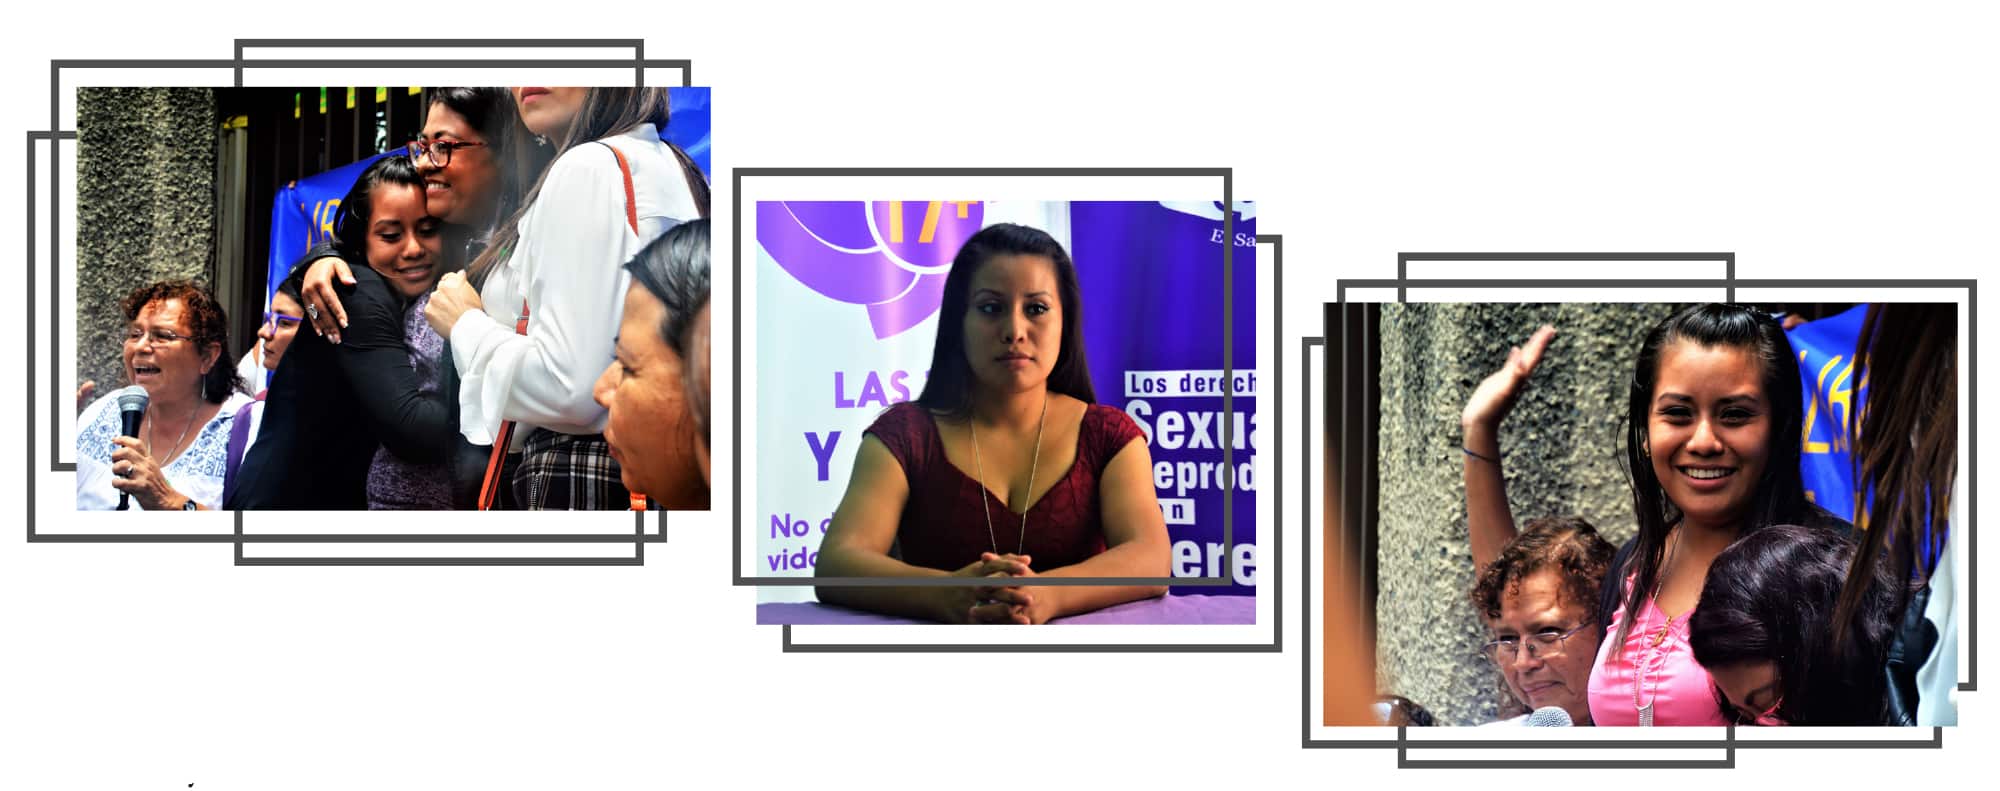 El calvario judicial interminable de Evelyn Hernández en El Salvador tras sufrir un parto extrahospitalario